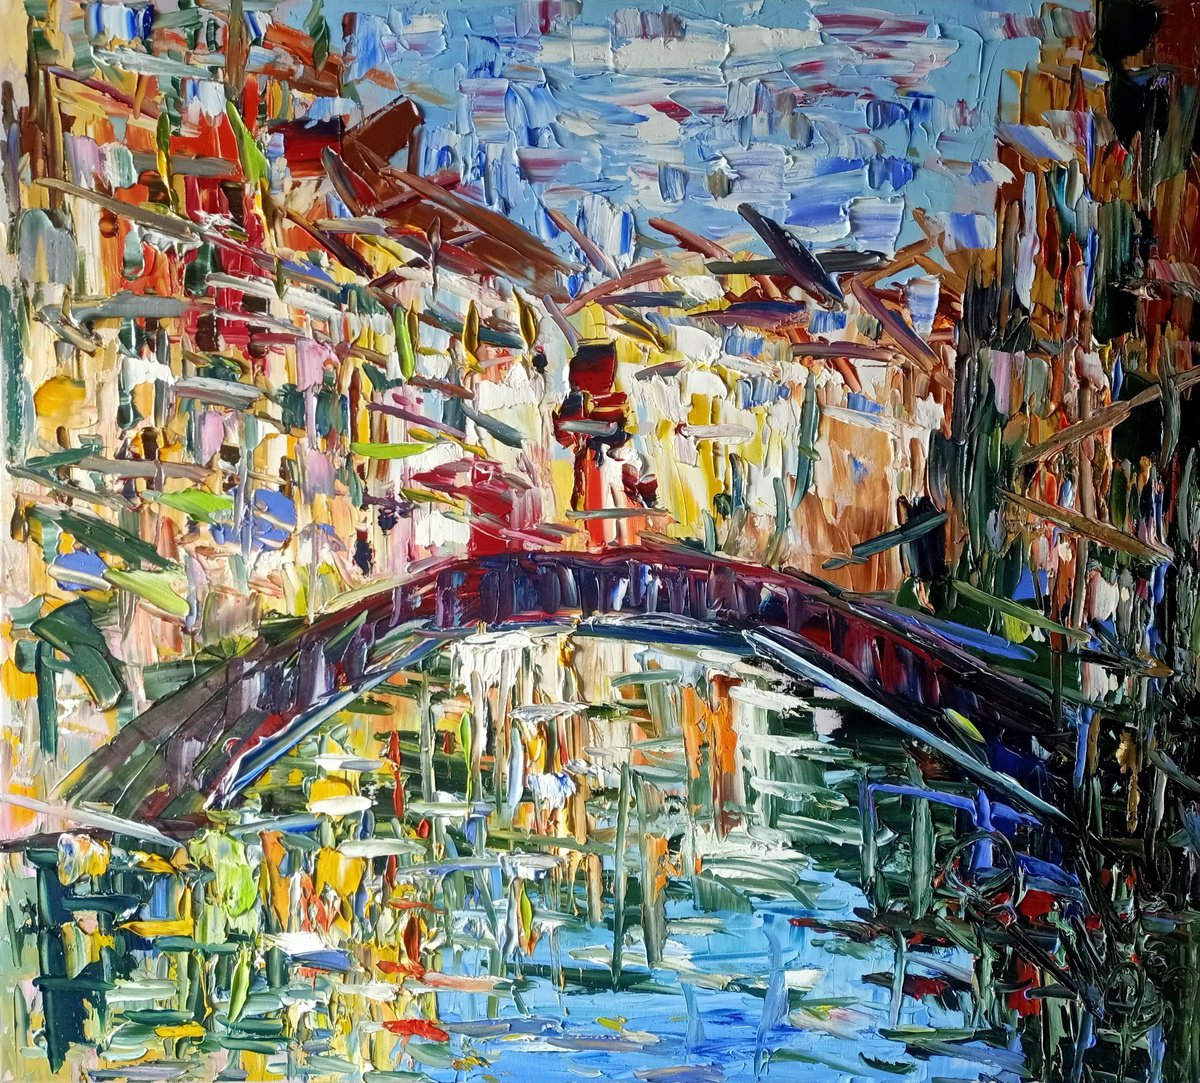 Impressioni in Venezia by Antonino Puliafico